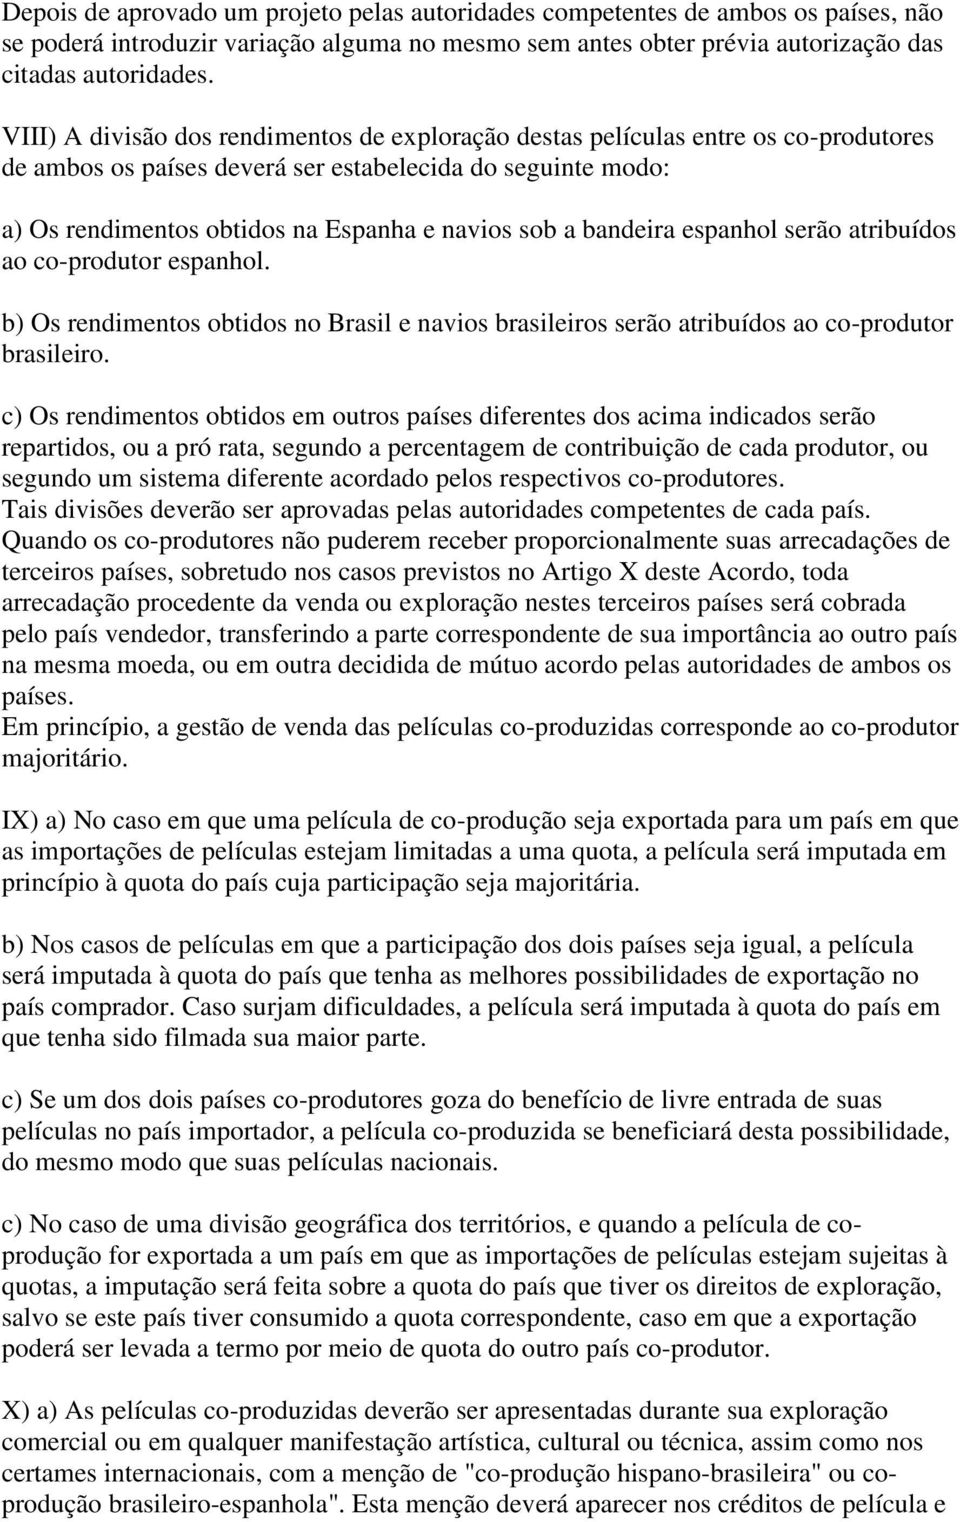 bandeira espanhol serão atribuídos ao co-produtor espanhol. b) Os rendimentos obtidos no Brasil e navios brasileiros serão atribuídos ao co-produtor brasileiro.